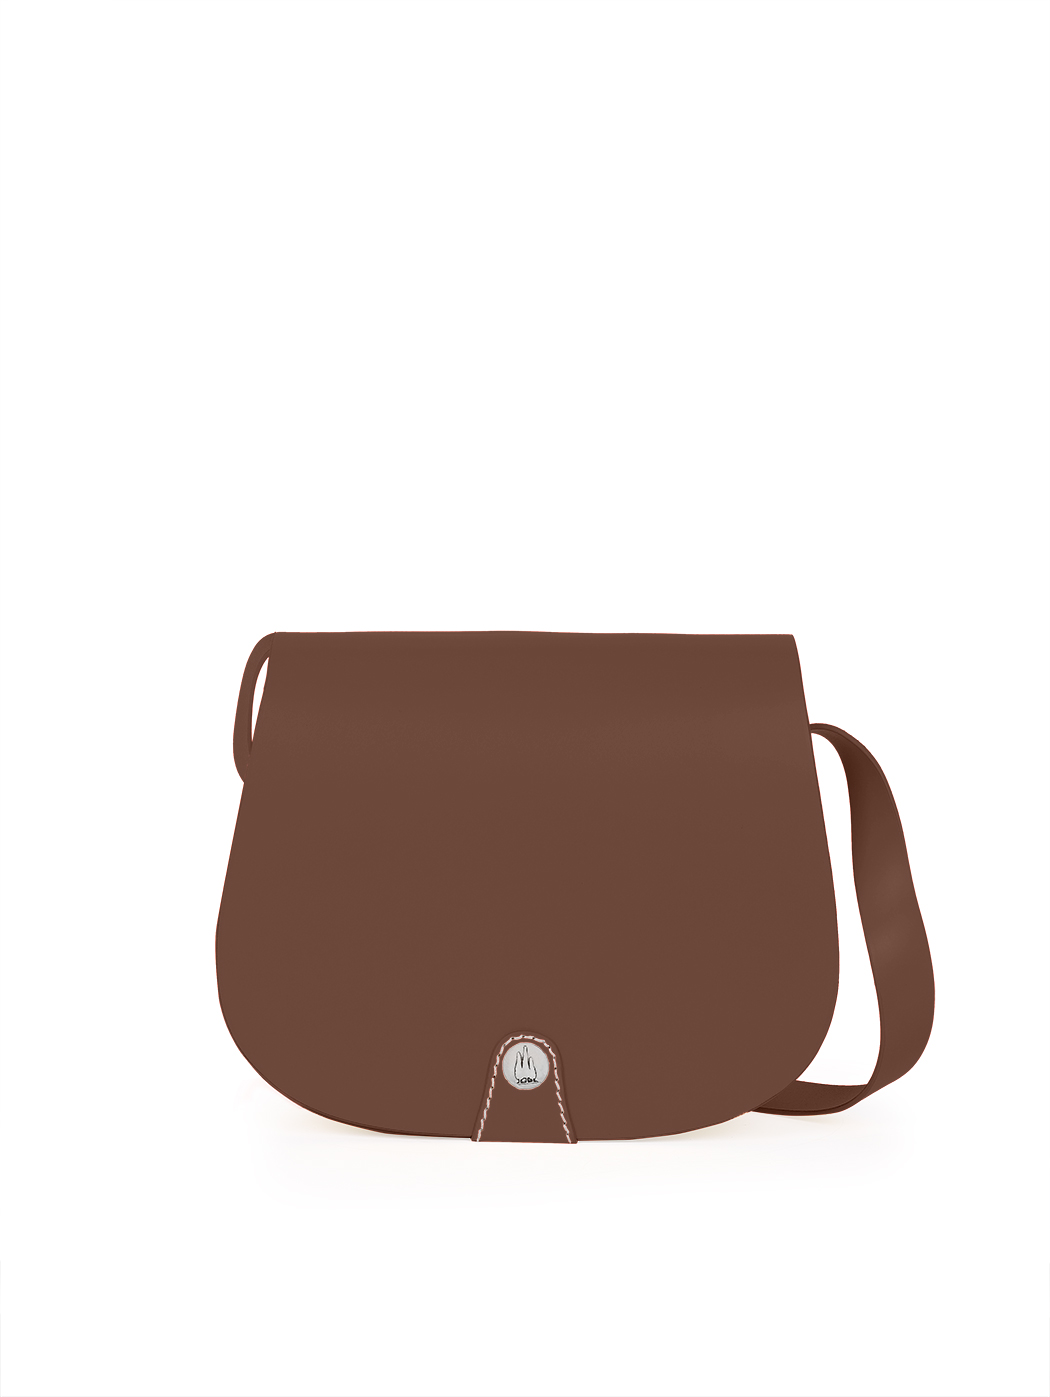 Кожаная сумка кросс – боди темно - коричневого цвета